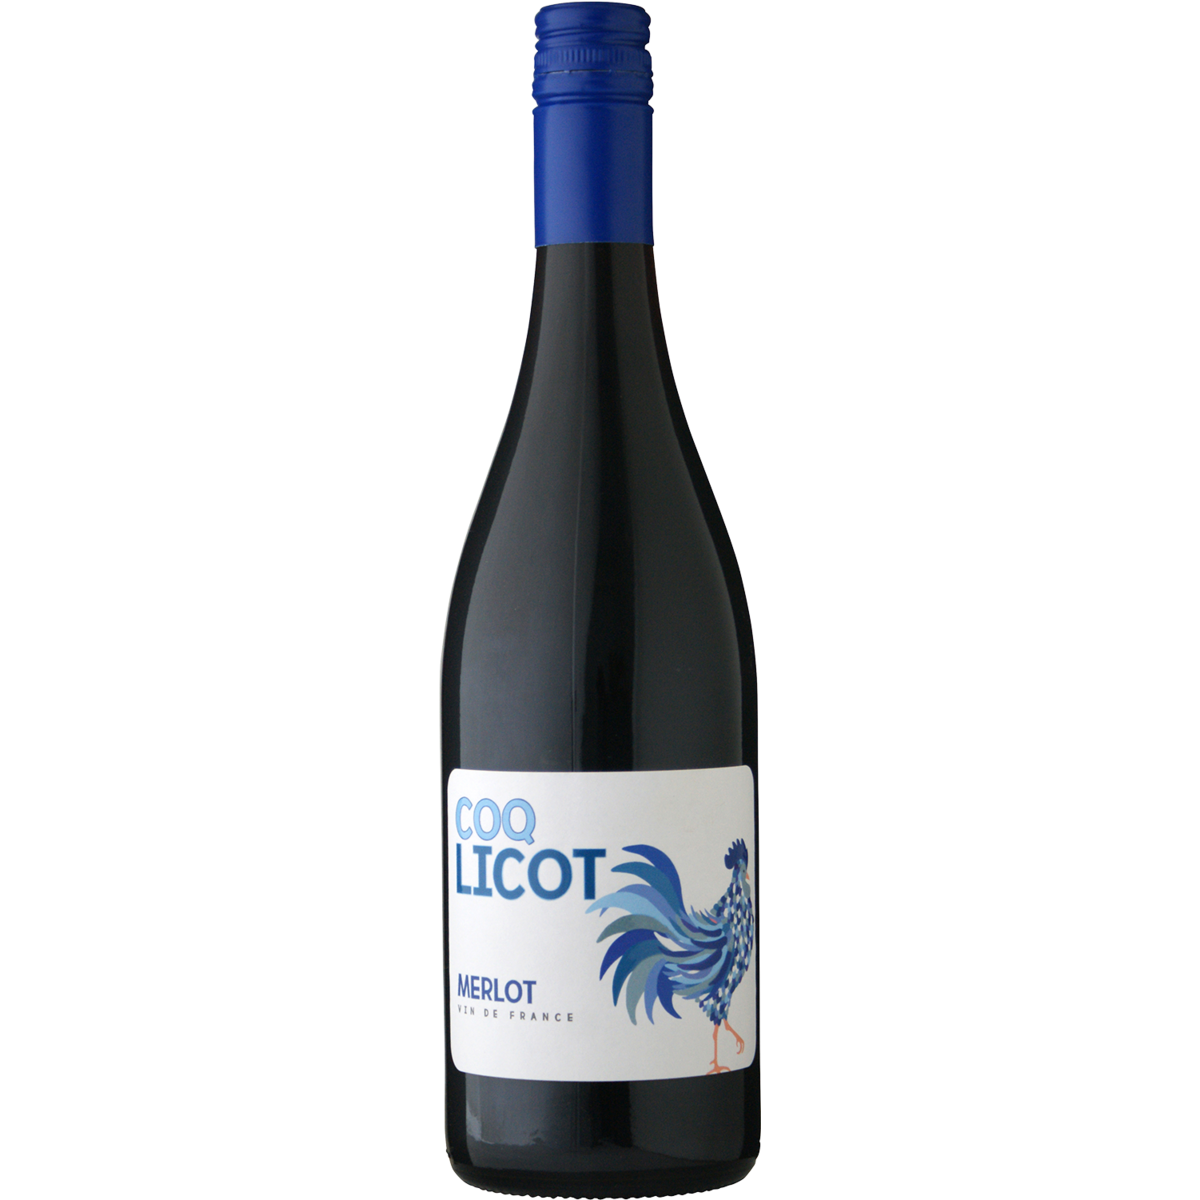 COQ LICOT Merlot Vin de France